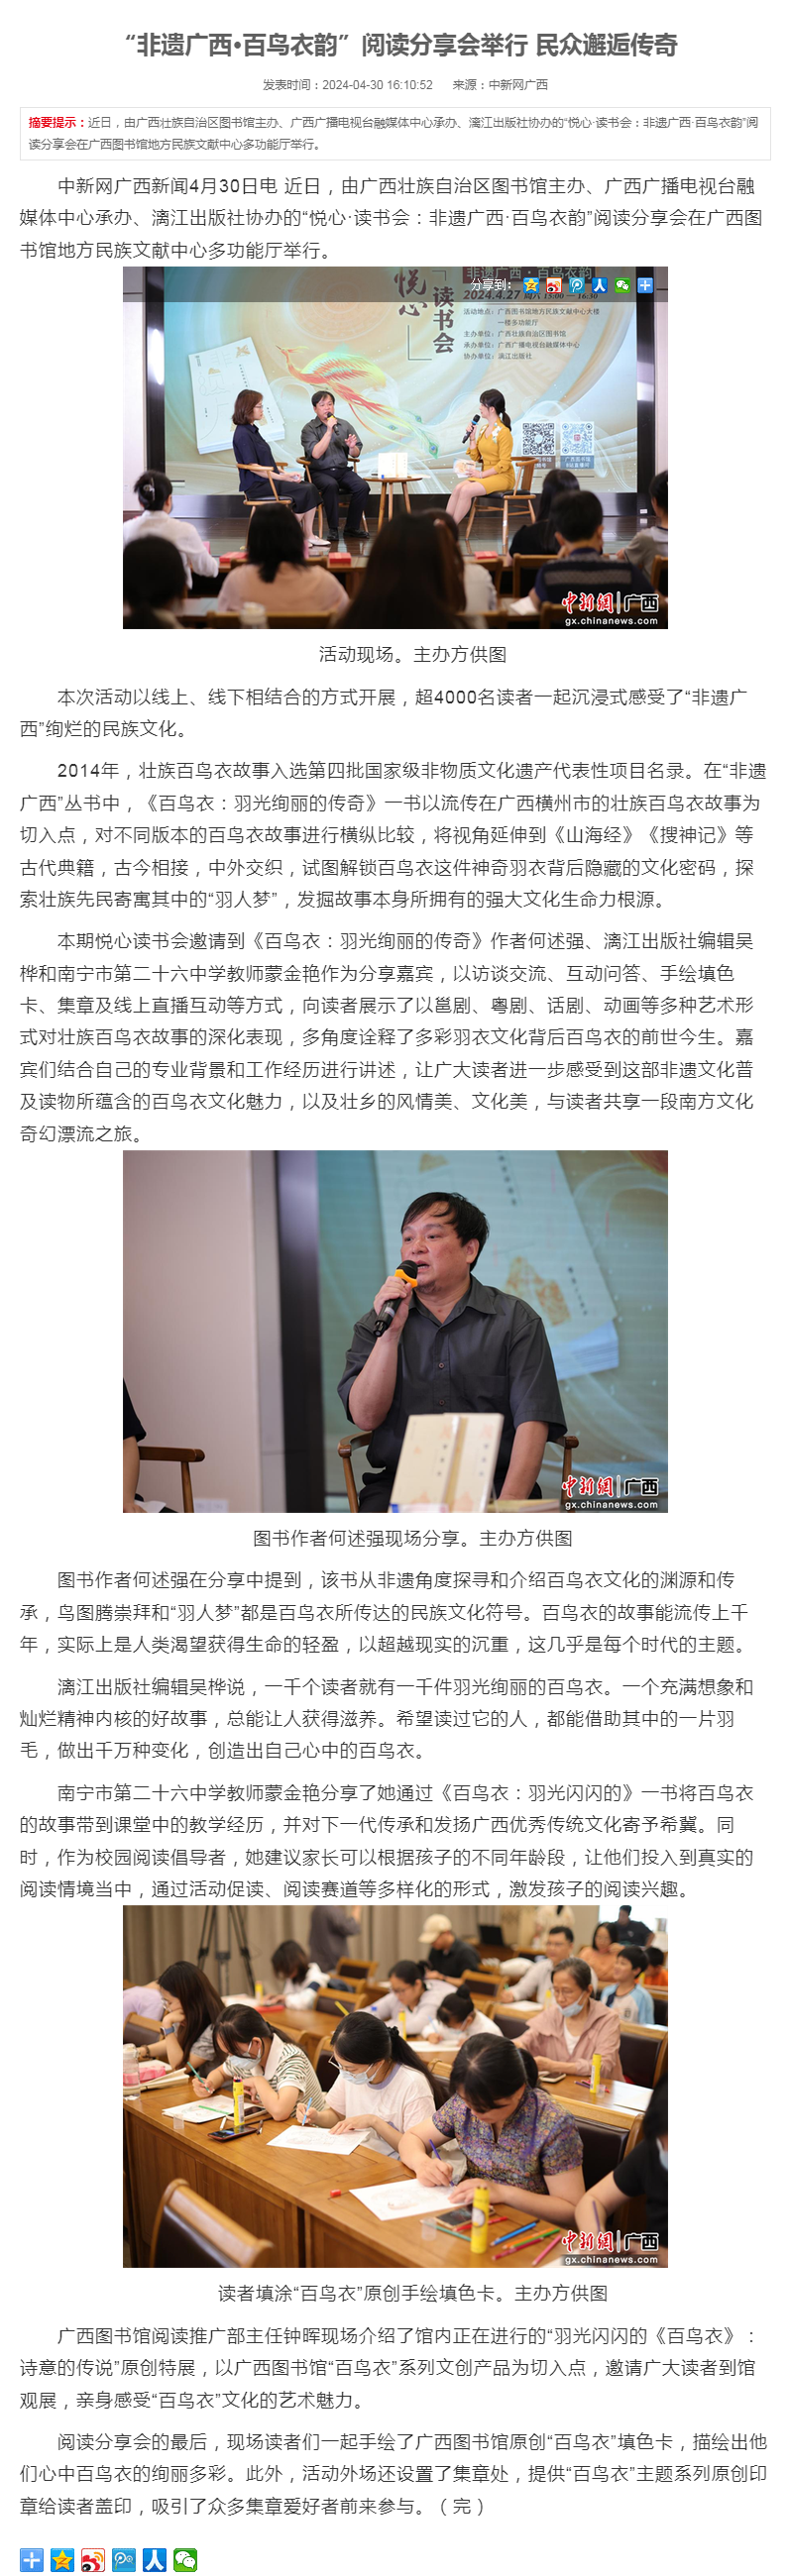 [中国新闻网]“非遗广西·百鸟衣韵”阅读分享会举行 民众邂逅传奇